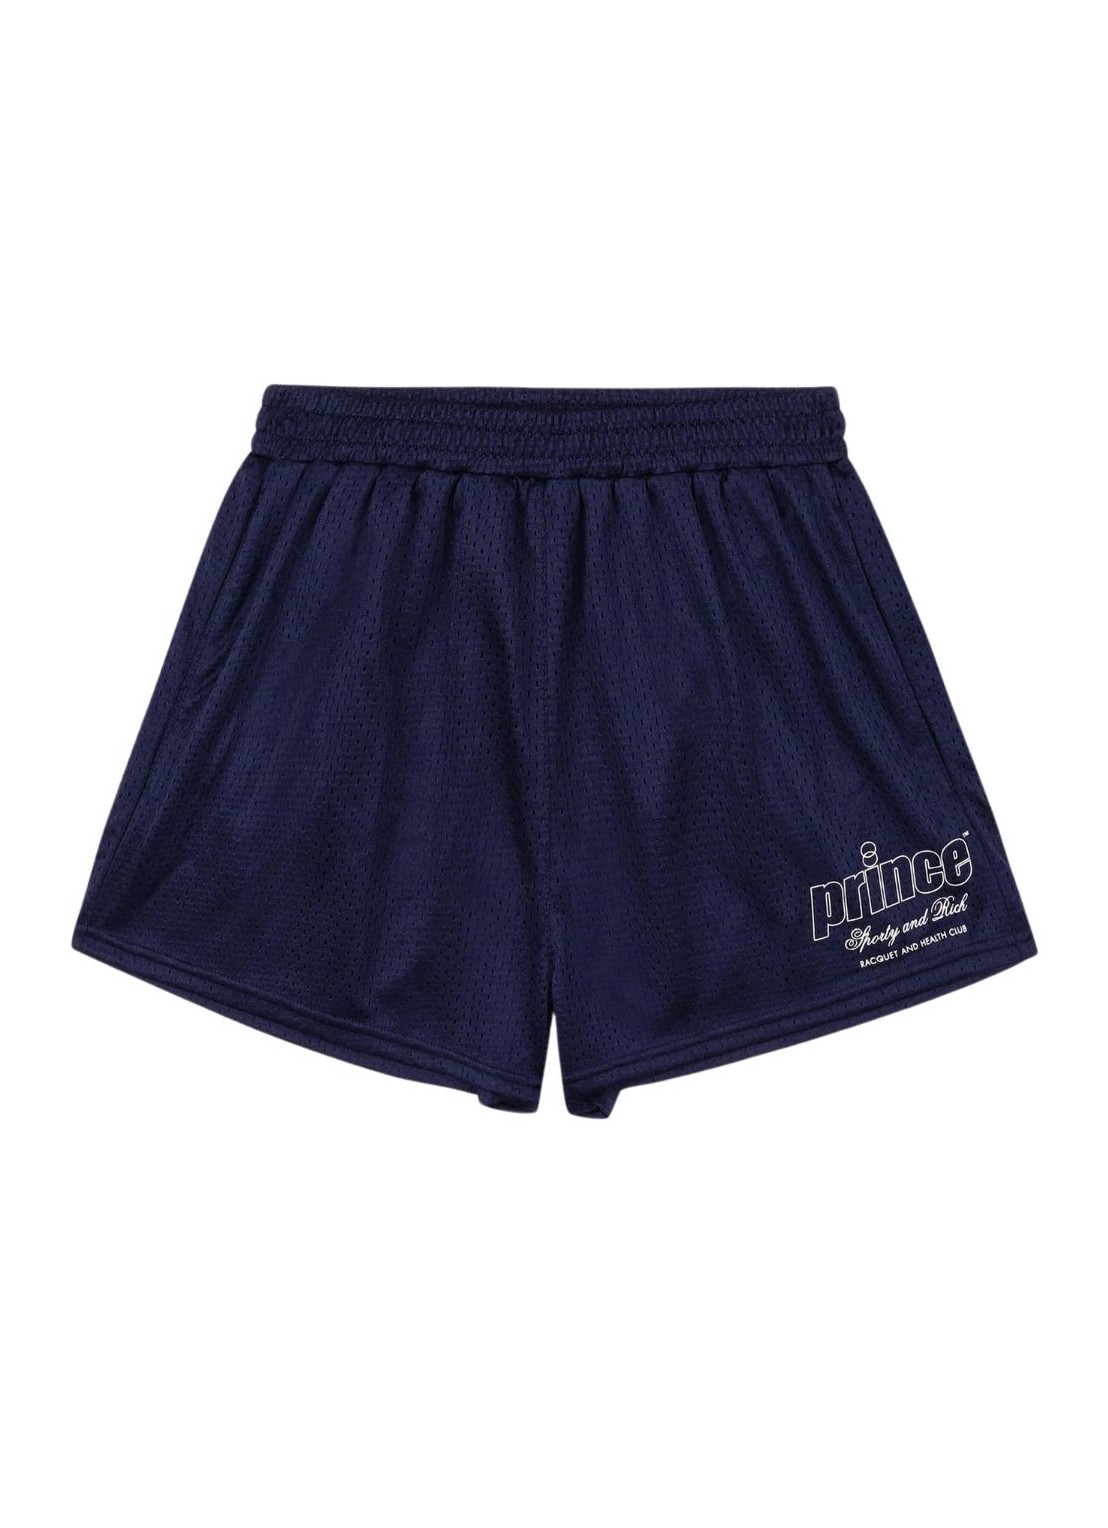 Pantalon corto sporty & rich short pant woman prince health mesh disco shorts sh023s414pn navy talla